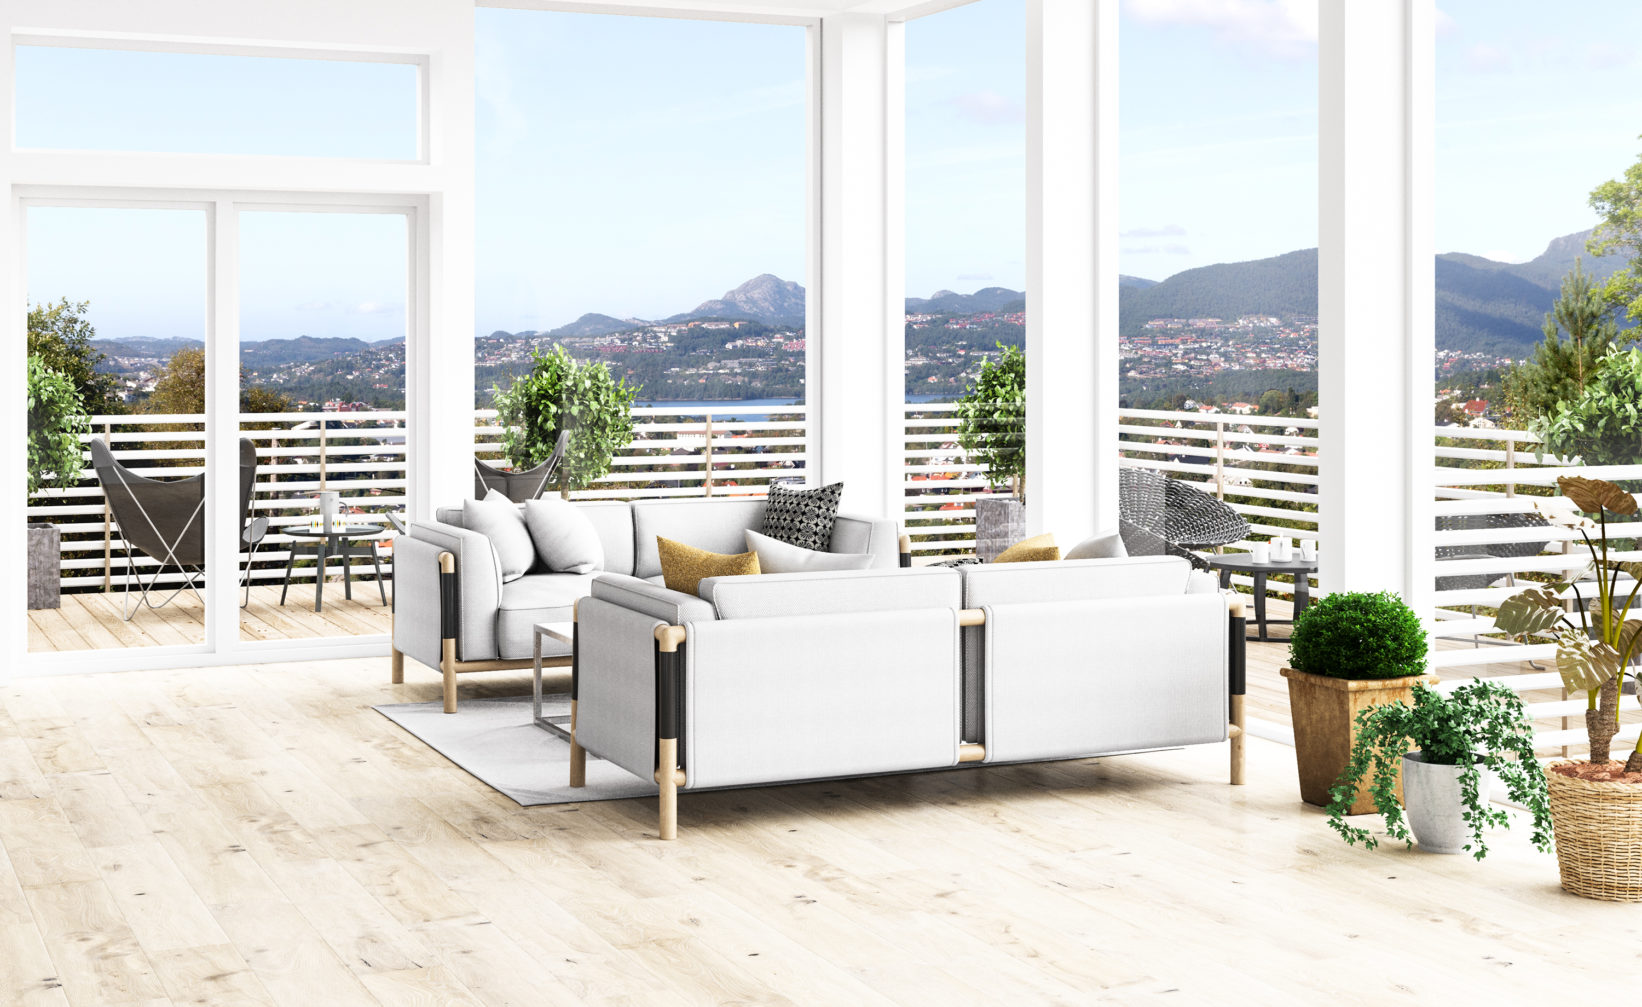 En stue med hvite møbler og utsikt mot fjellet, visualisert for salgsformål i 2017 for Klient: Teslo, Bruaas & Kalve.